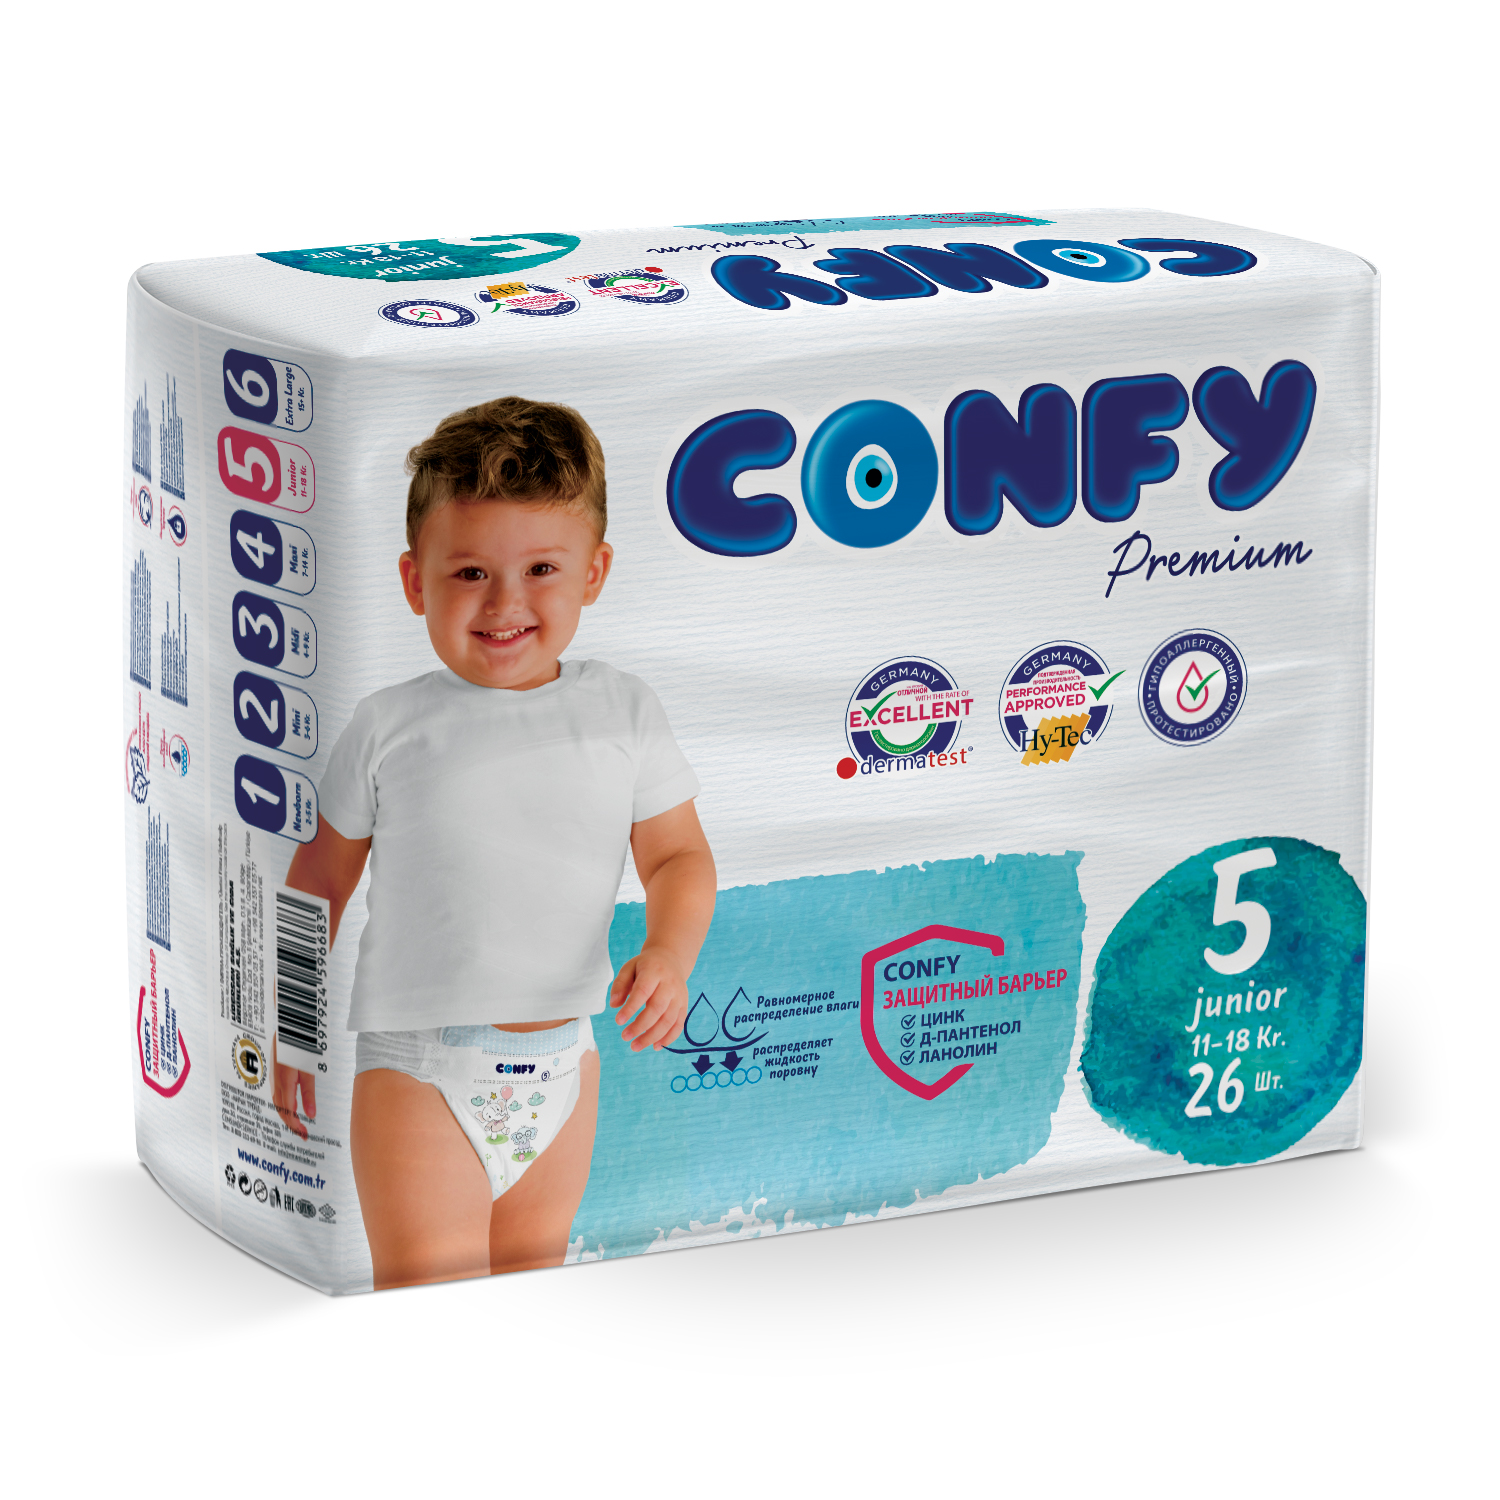 Подгузники детские Confy Premium 11-18 кг (размер 5) памперсы 26шт